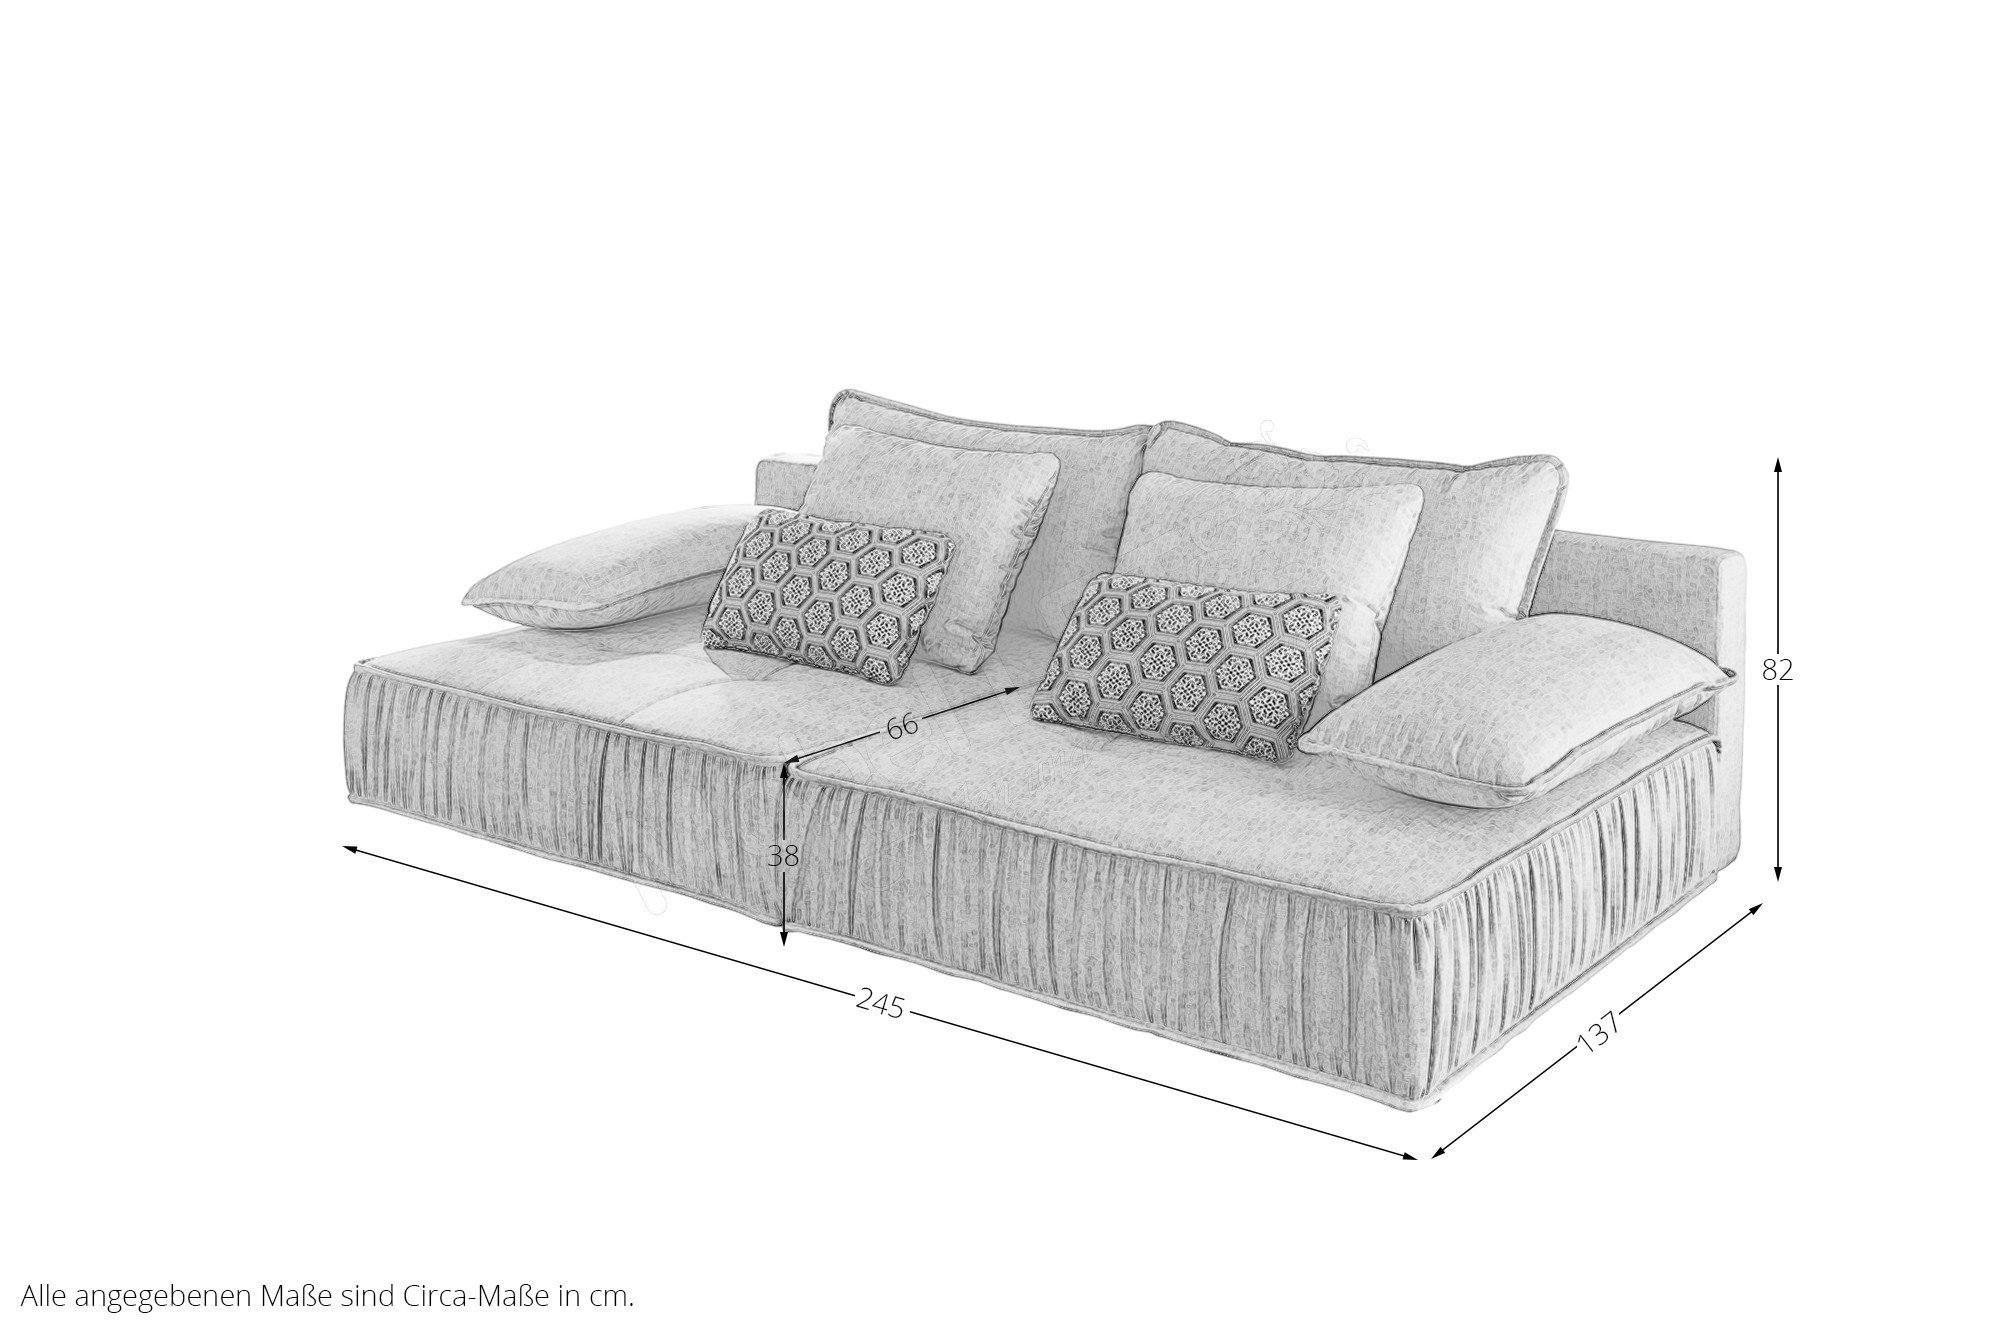 Jockenhöfer Polstermöbel Marrakesch Big Sofa in Grau | Möbel Letz - Ihr  Online-Shop